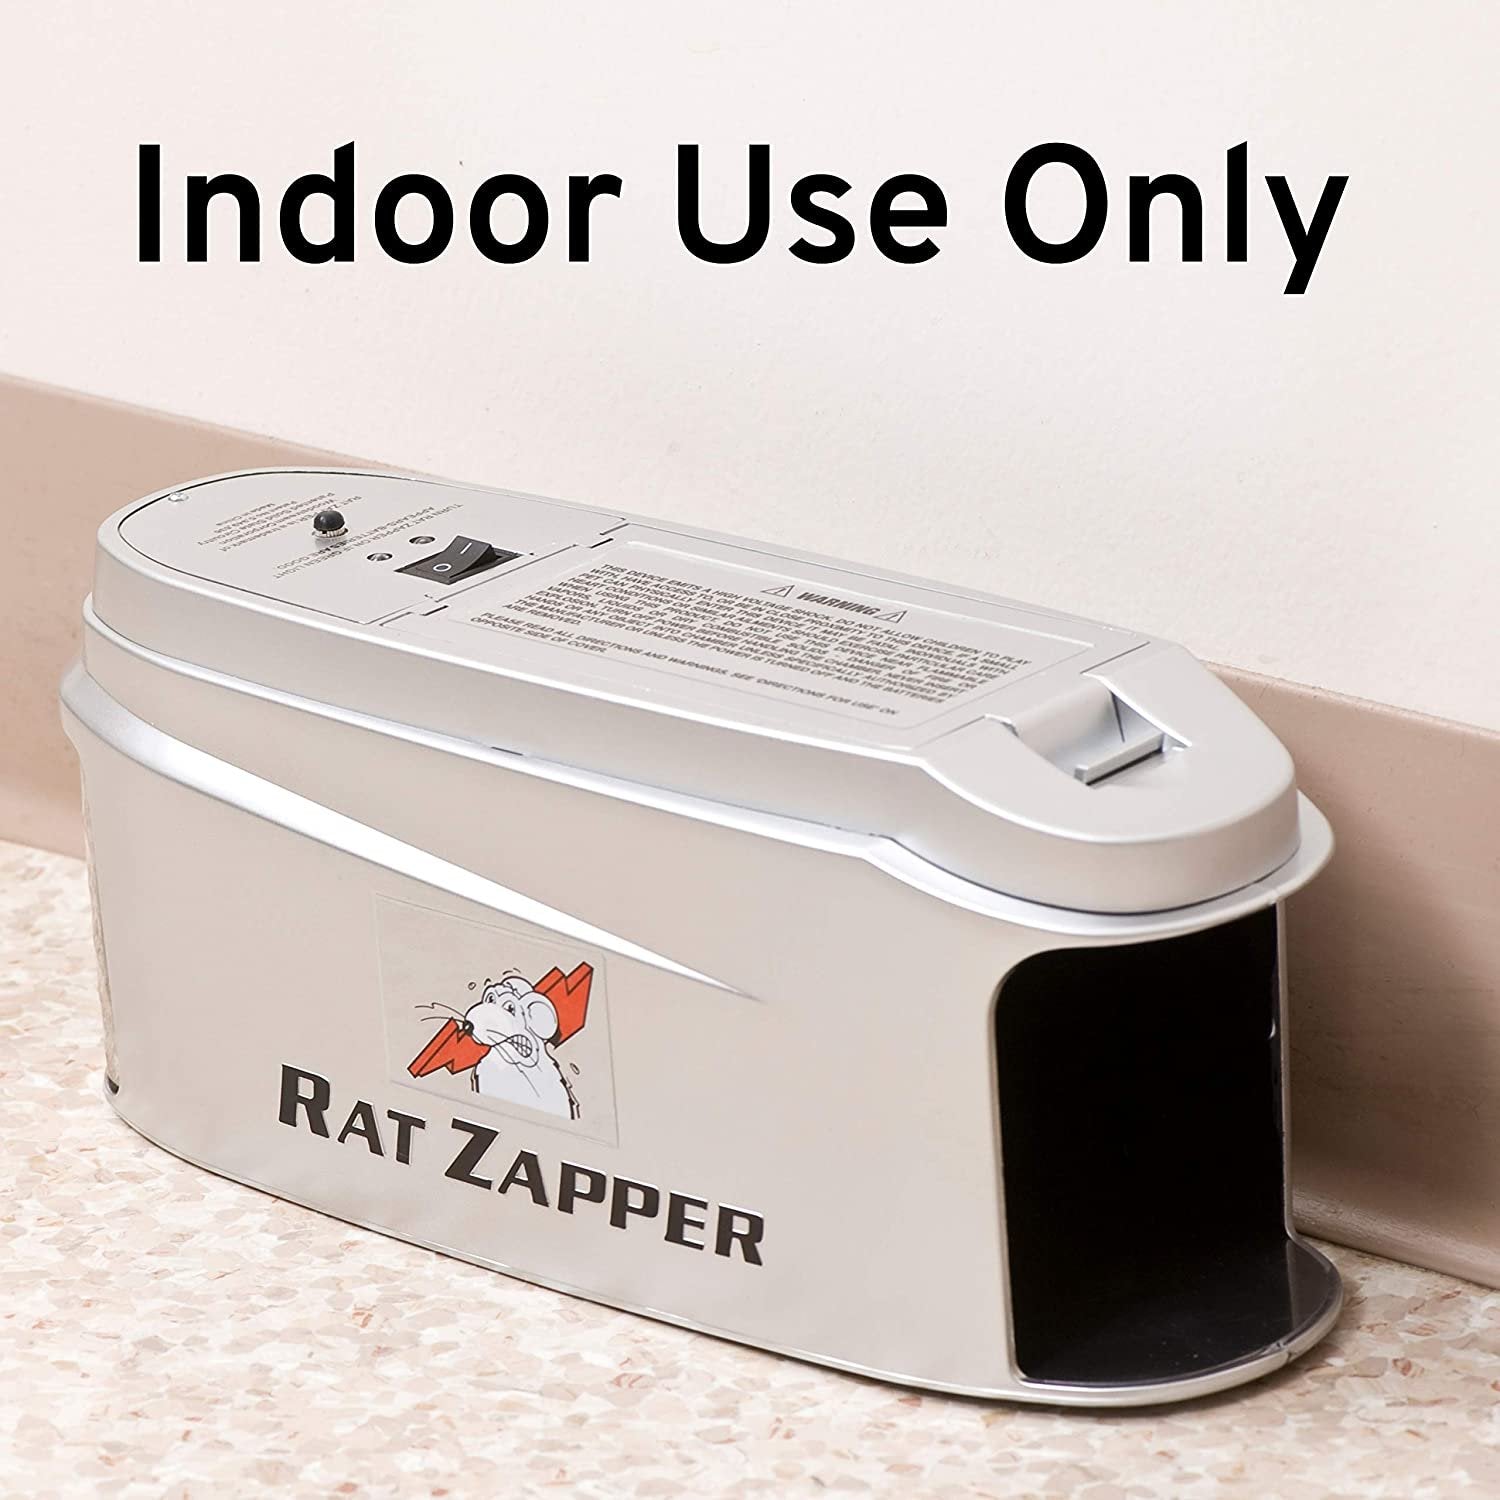 Rat Zapper Ultra RZU001-4 Indoor Electronic Rat Trap - 1 Trap